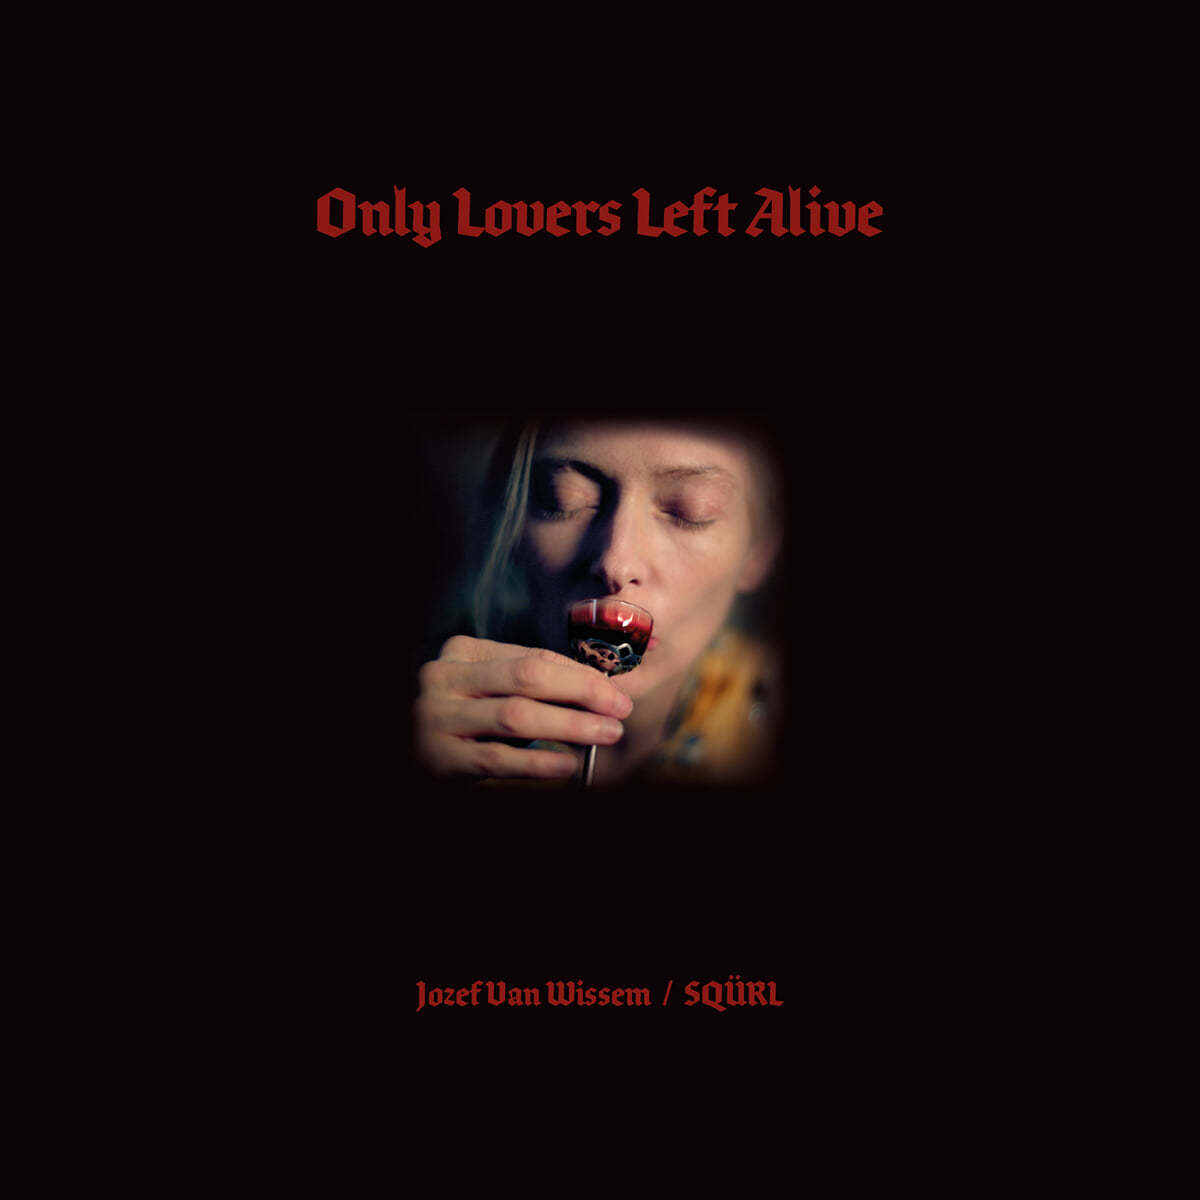 오직 사랑하는 이들만이 살아남는다 영화음악 (Only Lovers Left Alive OST by SQURL / Jozef Van Wissem) 